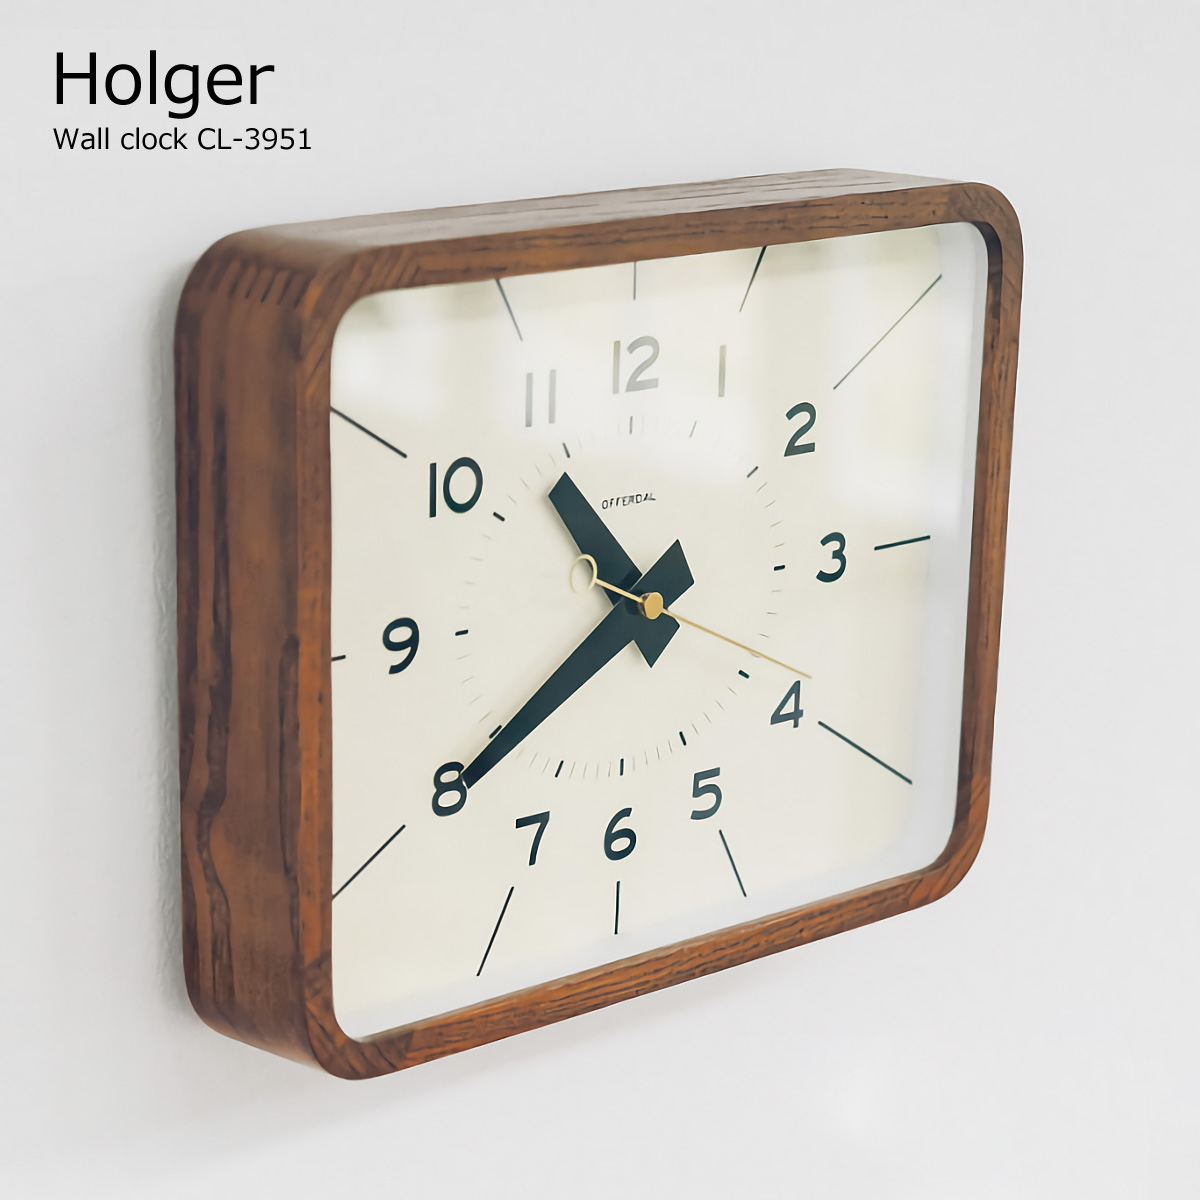 楽天市場 壁掛け時計 おしゃれ 時計 壁掛け 北欧 掛け時計 Holger ホルガー Cl 3951 ミッドセンチュリー 四角 静音 音がしない 木製 インテリア ウォールクロック デザイナーズ オシャレ 見やすい シンプル Pup01 着後レビューでクーポン あす楽 ライフ